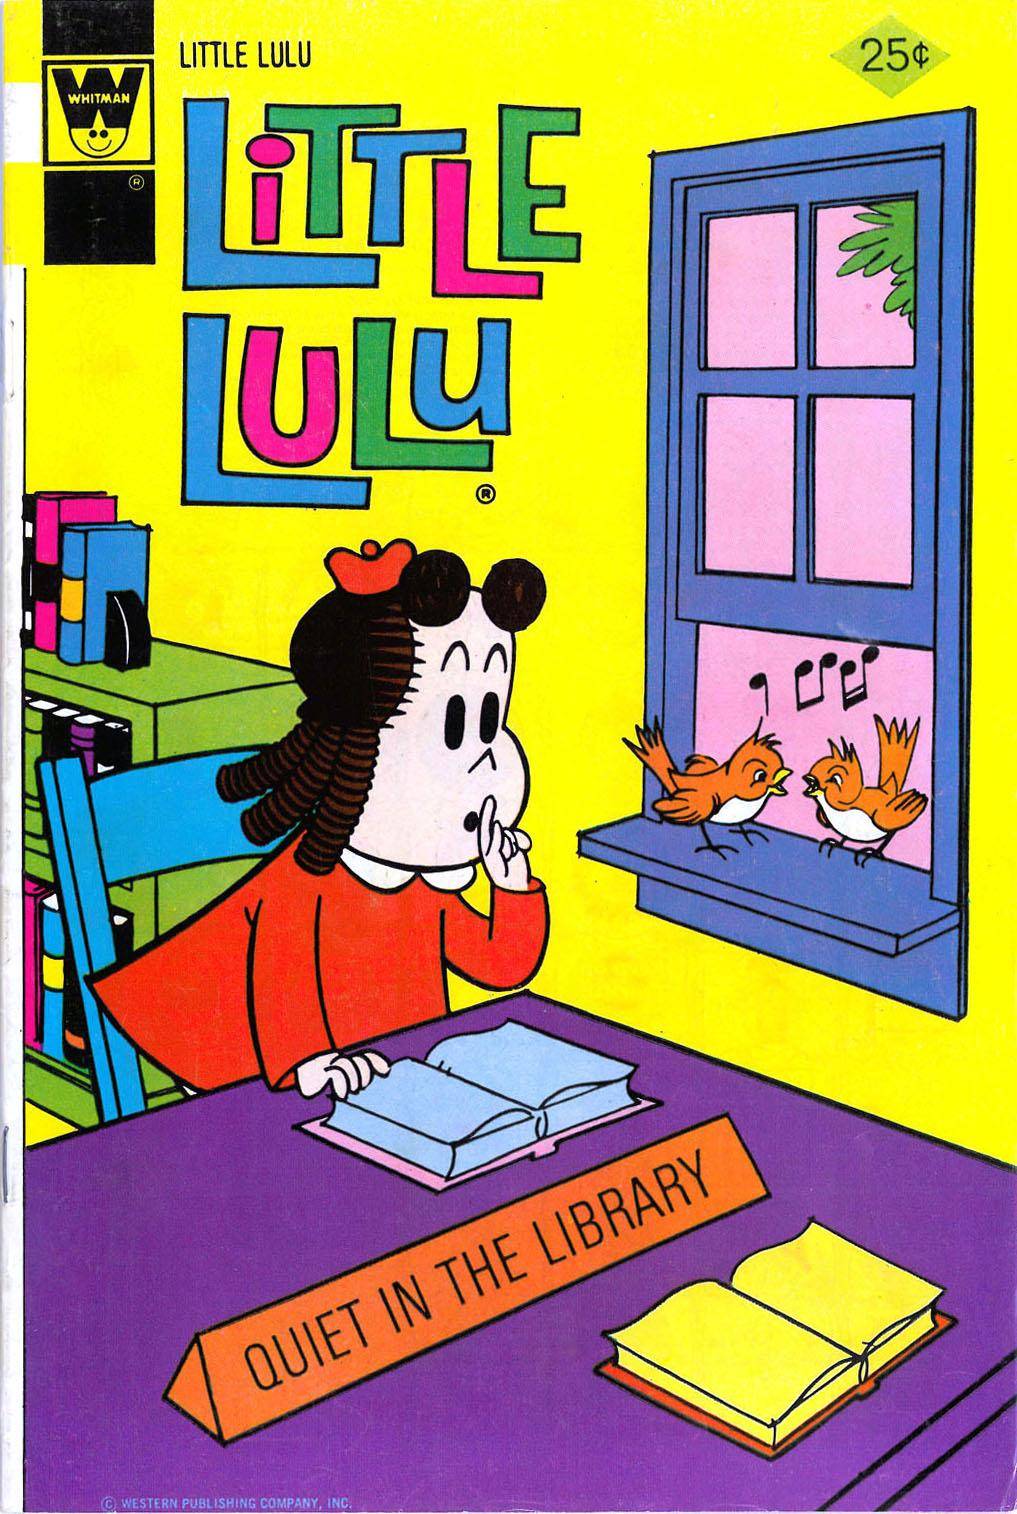 Little Lulu 1974-11 222